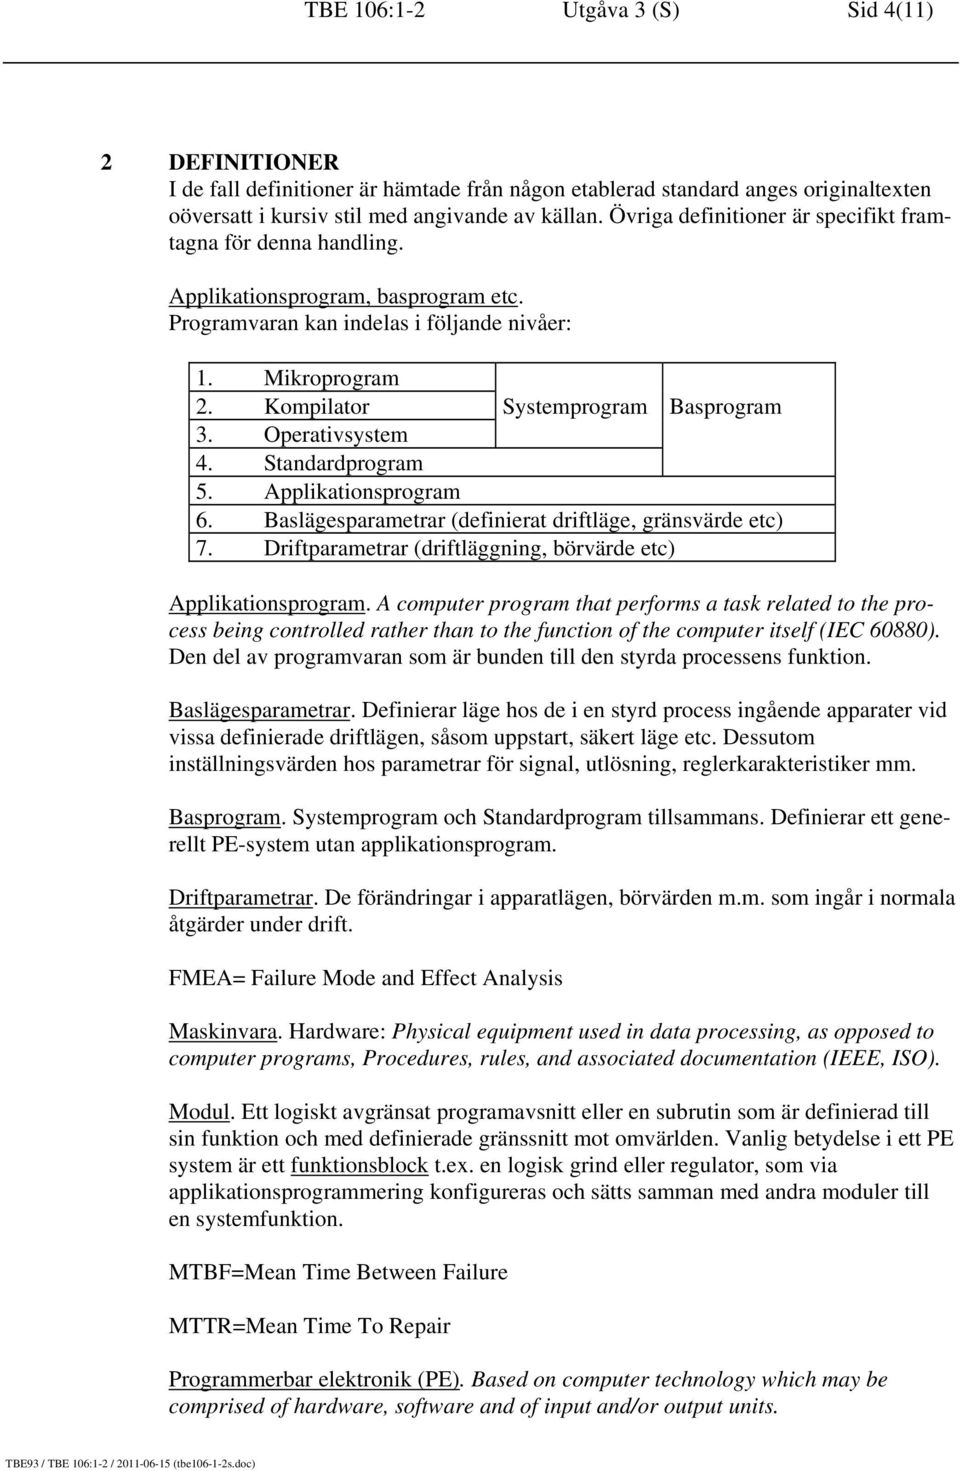 Kompilator Systemprogram Basprogram 3. Operativsystem 4. Standardprogram 5. Applikationsprogram 6. Baslägesparametrar (definierat driftläge, gränsvärde etc) 7.